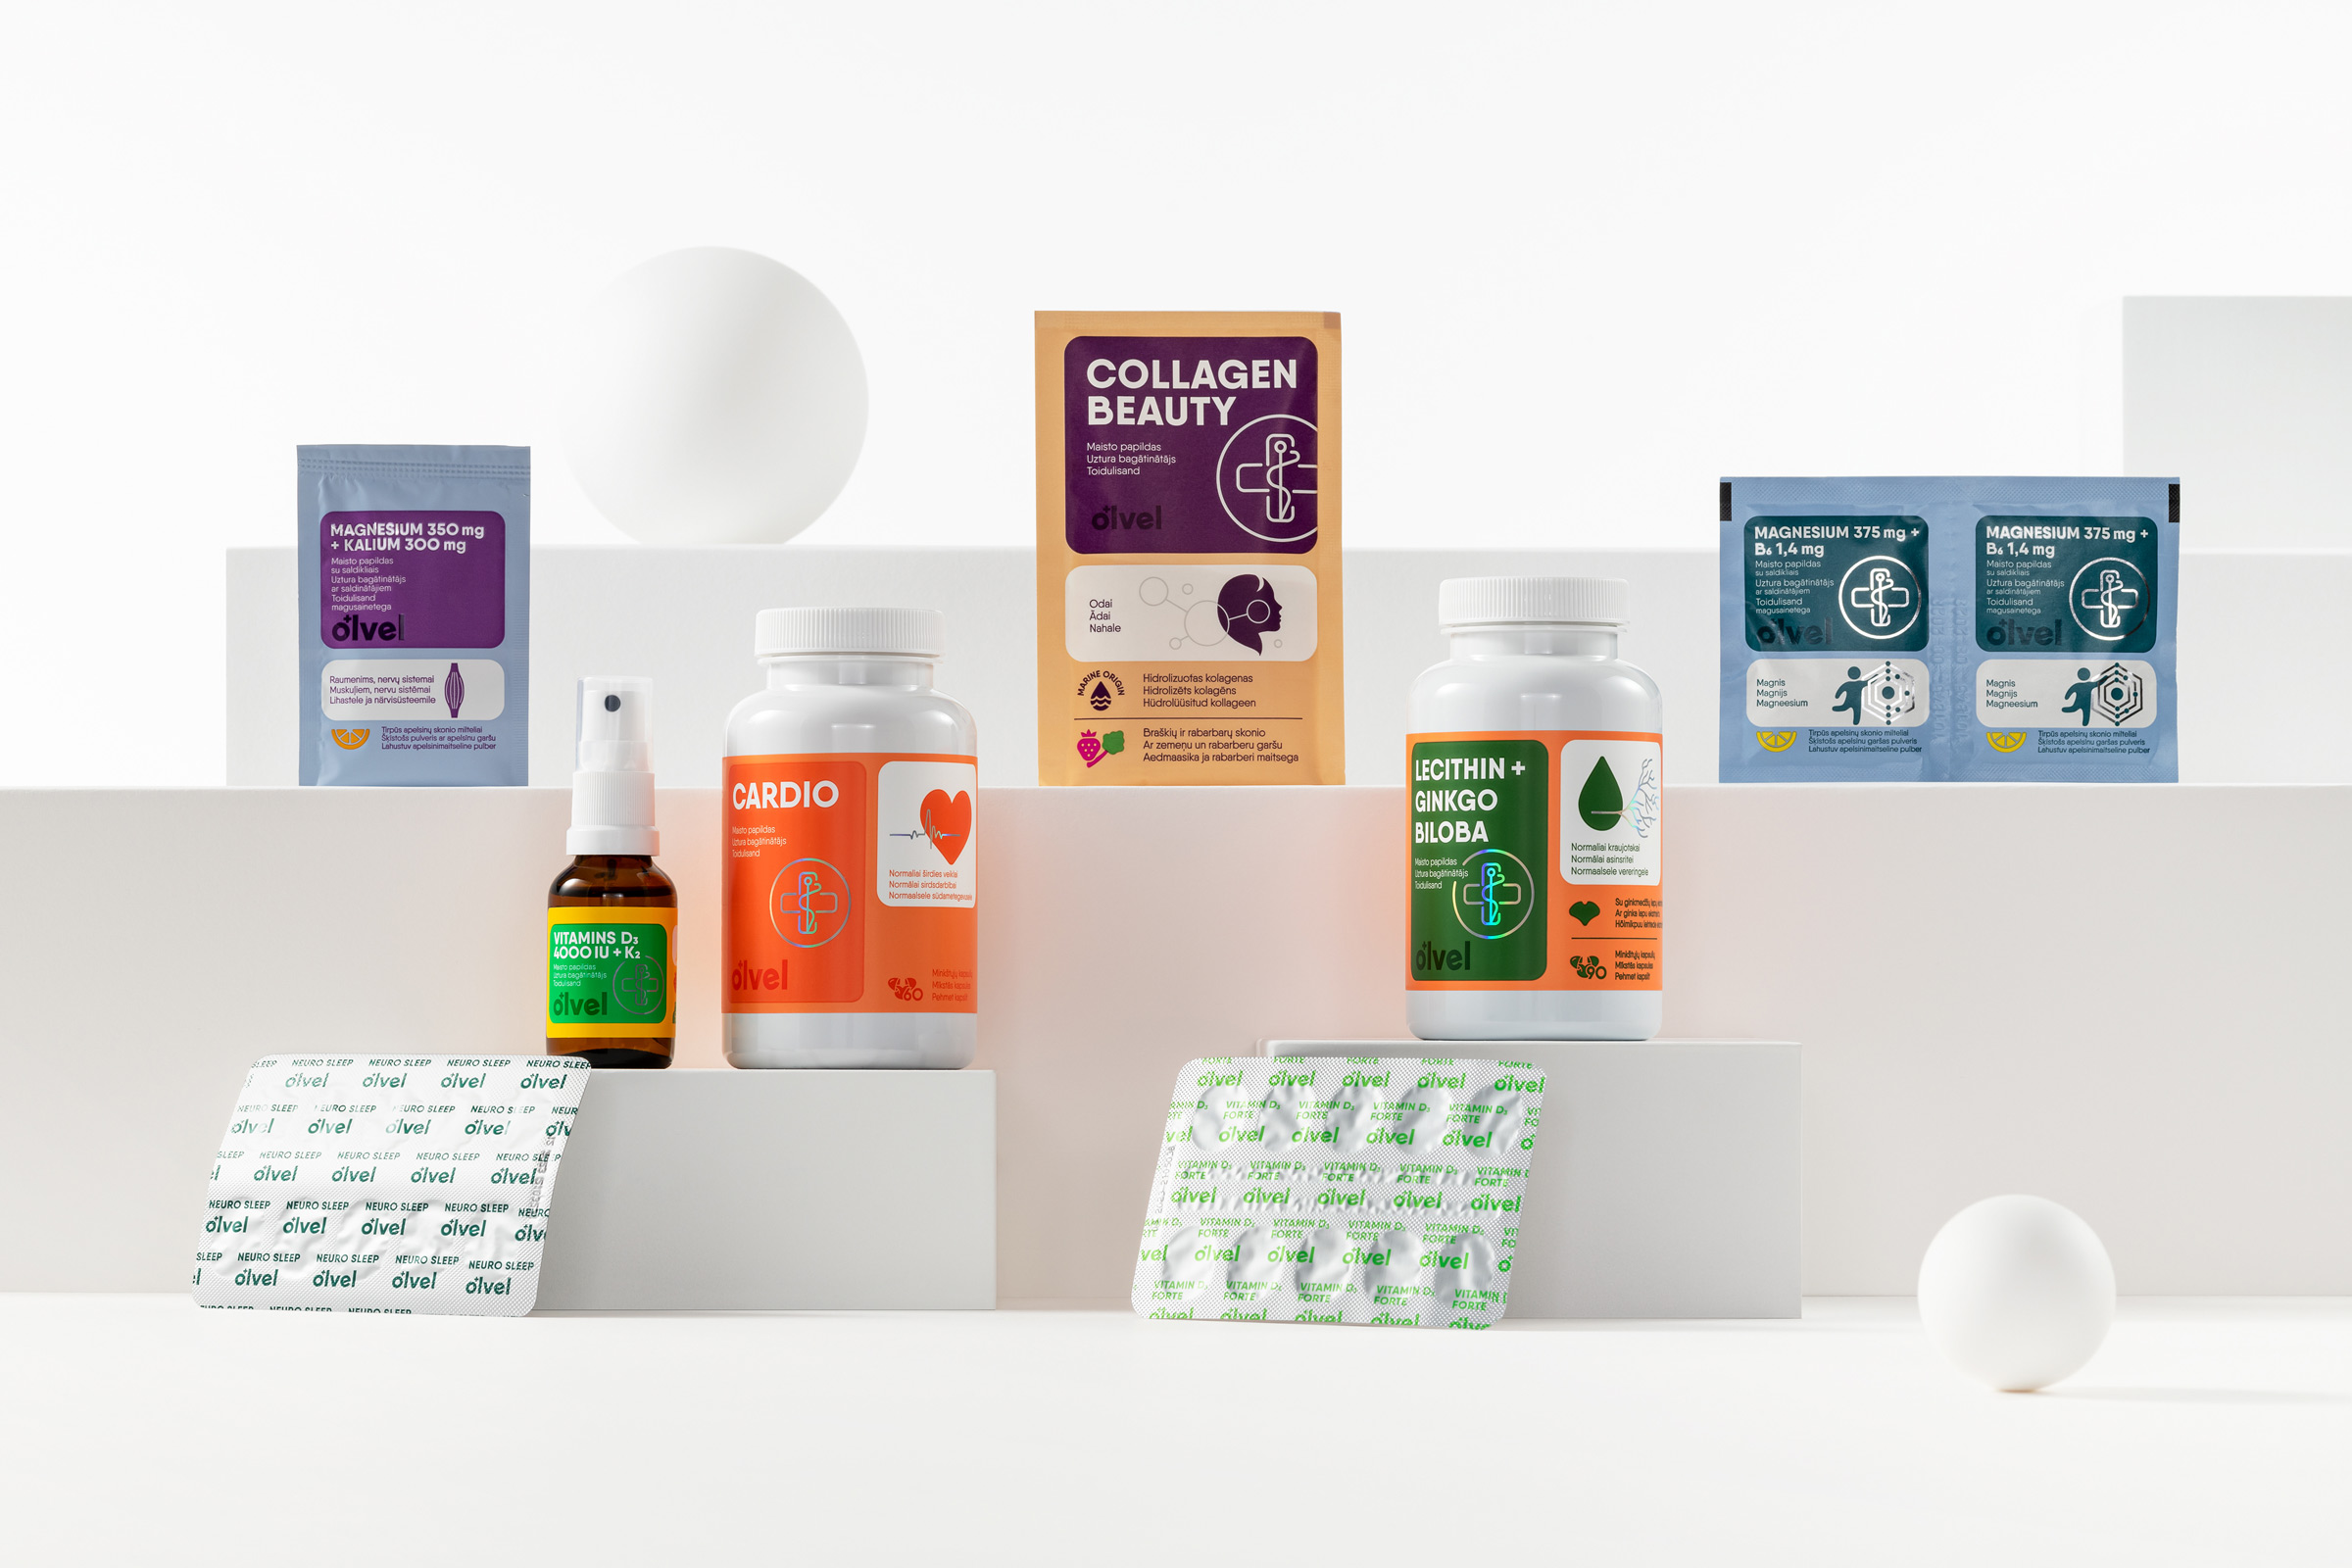 Olvel保健品包装设计,设计大气的保健品产品包装设计作品欣赏。